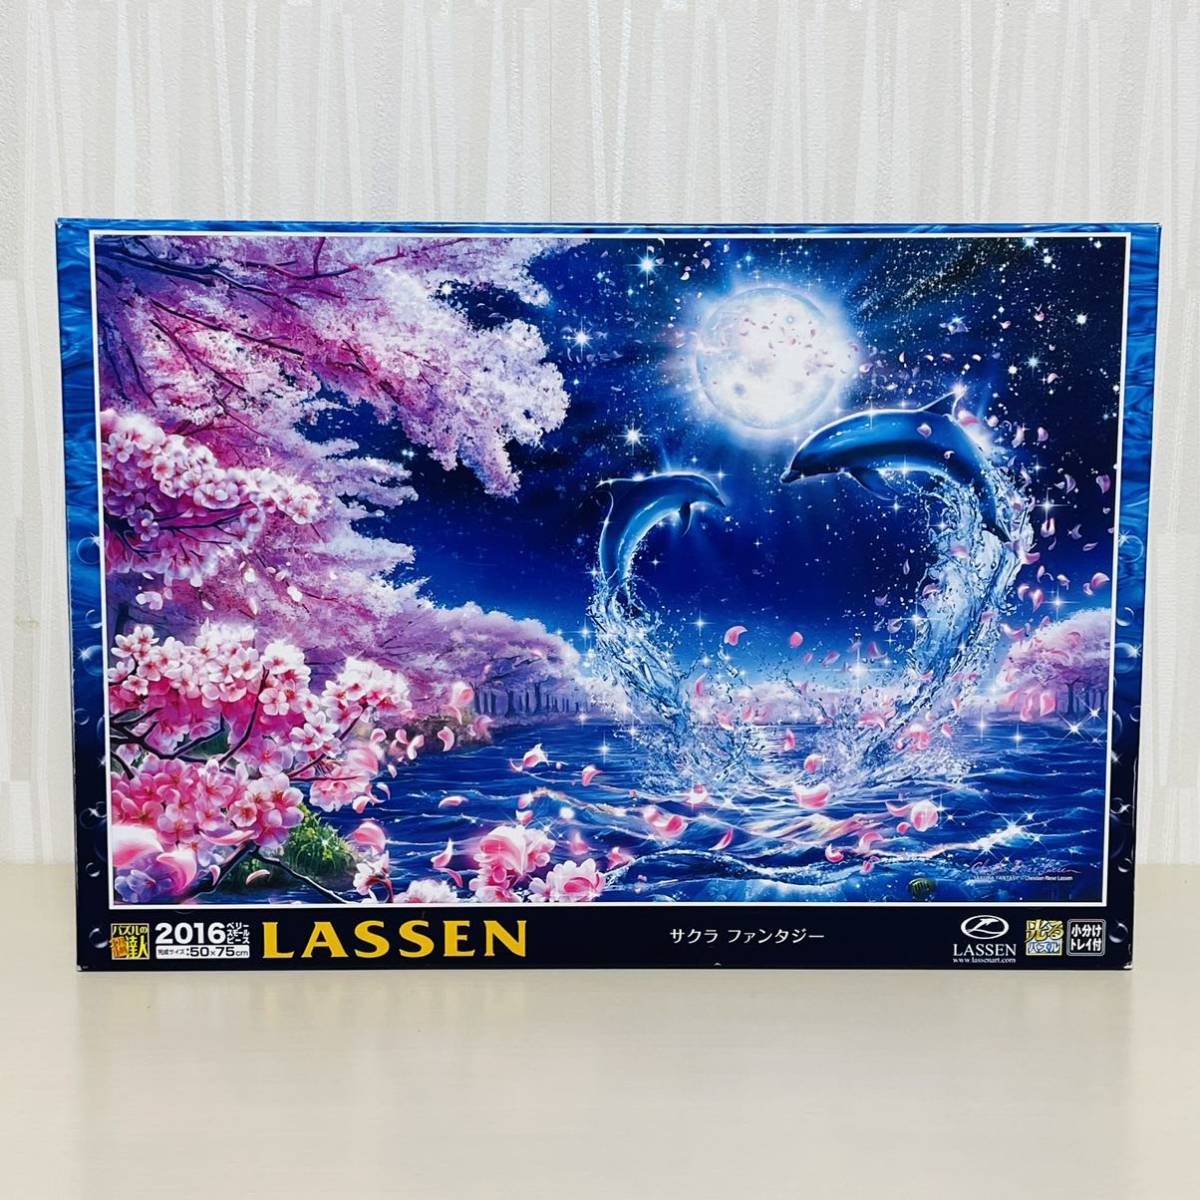 Innenbeutel ungeöffnet Puzzle Master Jigsaw Puzzle Lassen 2016 Piece Glowing Puzzle Sakura Fantasy Epoch Co., GmbH., Spielzeug, Spiel, Puzzle, Puzzle